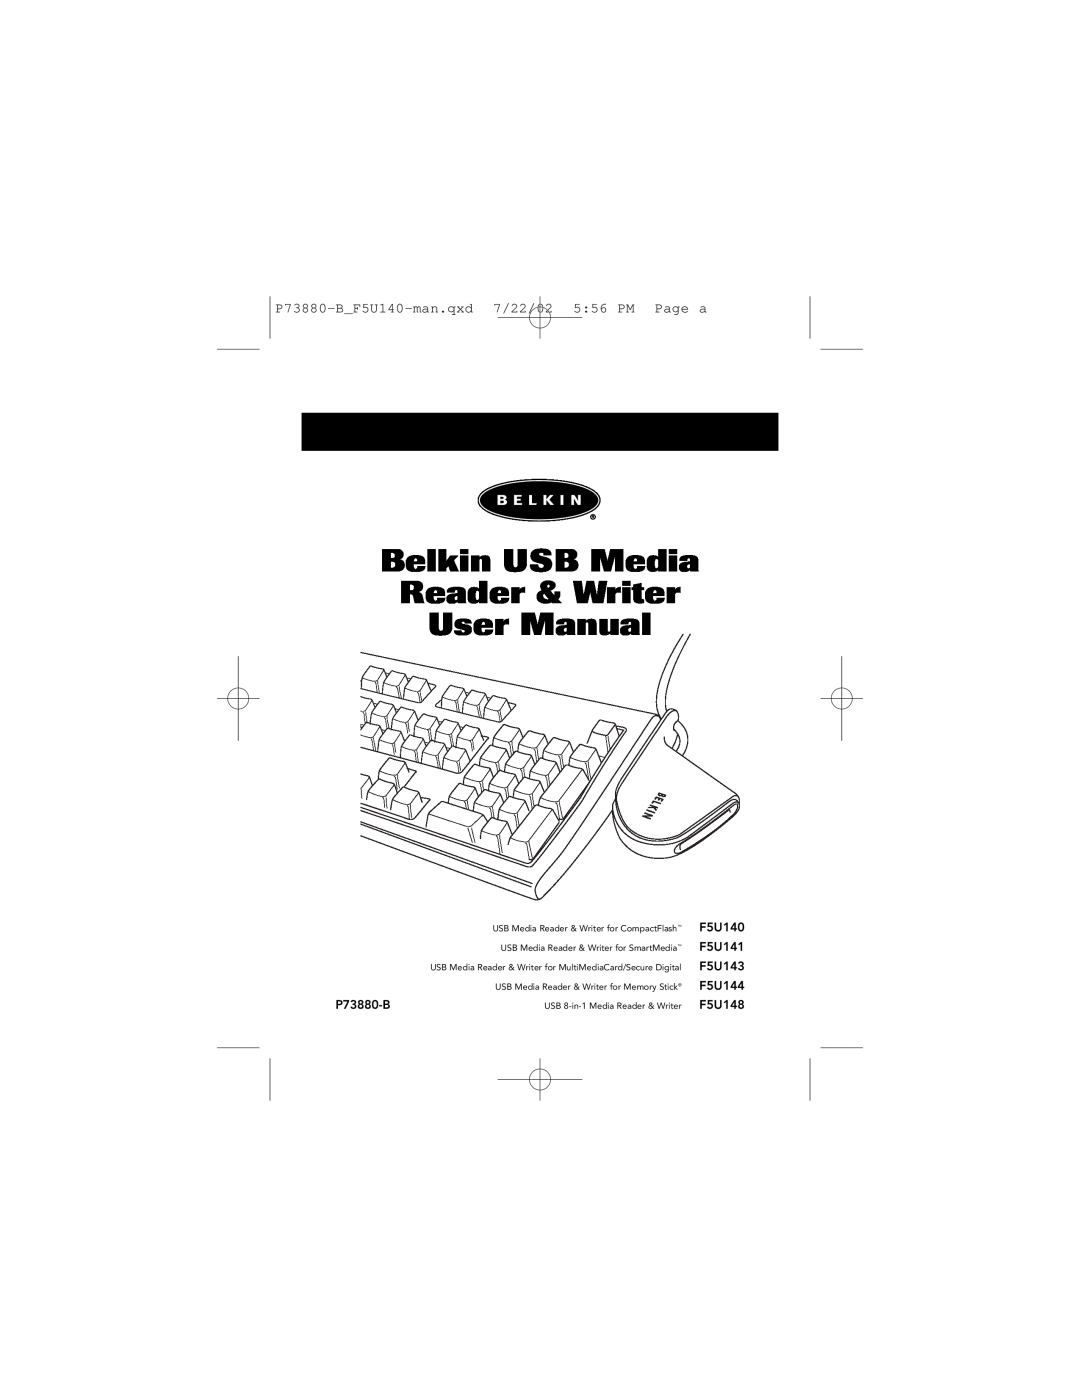 Belkin user manual P73880-BF5U140-man.qxd 7/22/02 556 PM Page a, F5U141, F5U143, F5U144, F5U148 